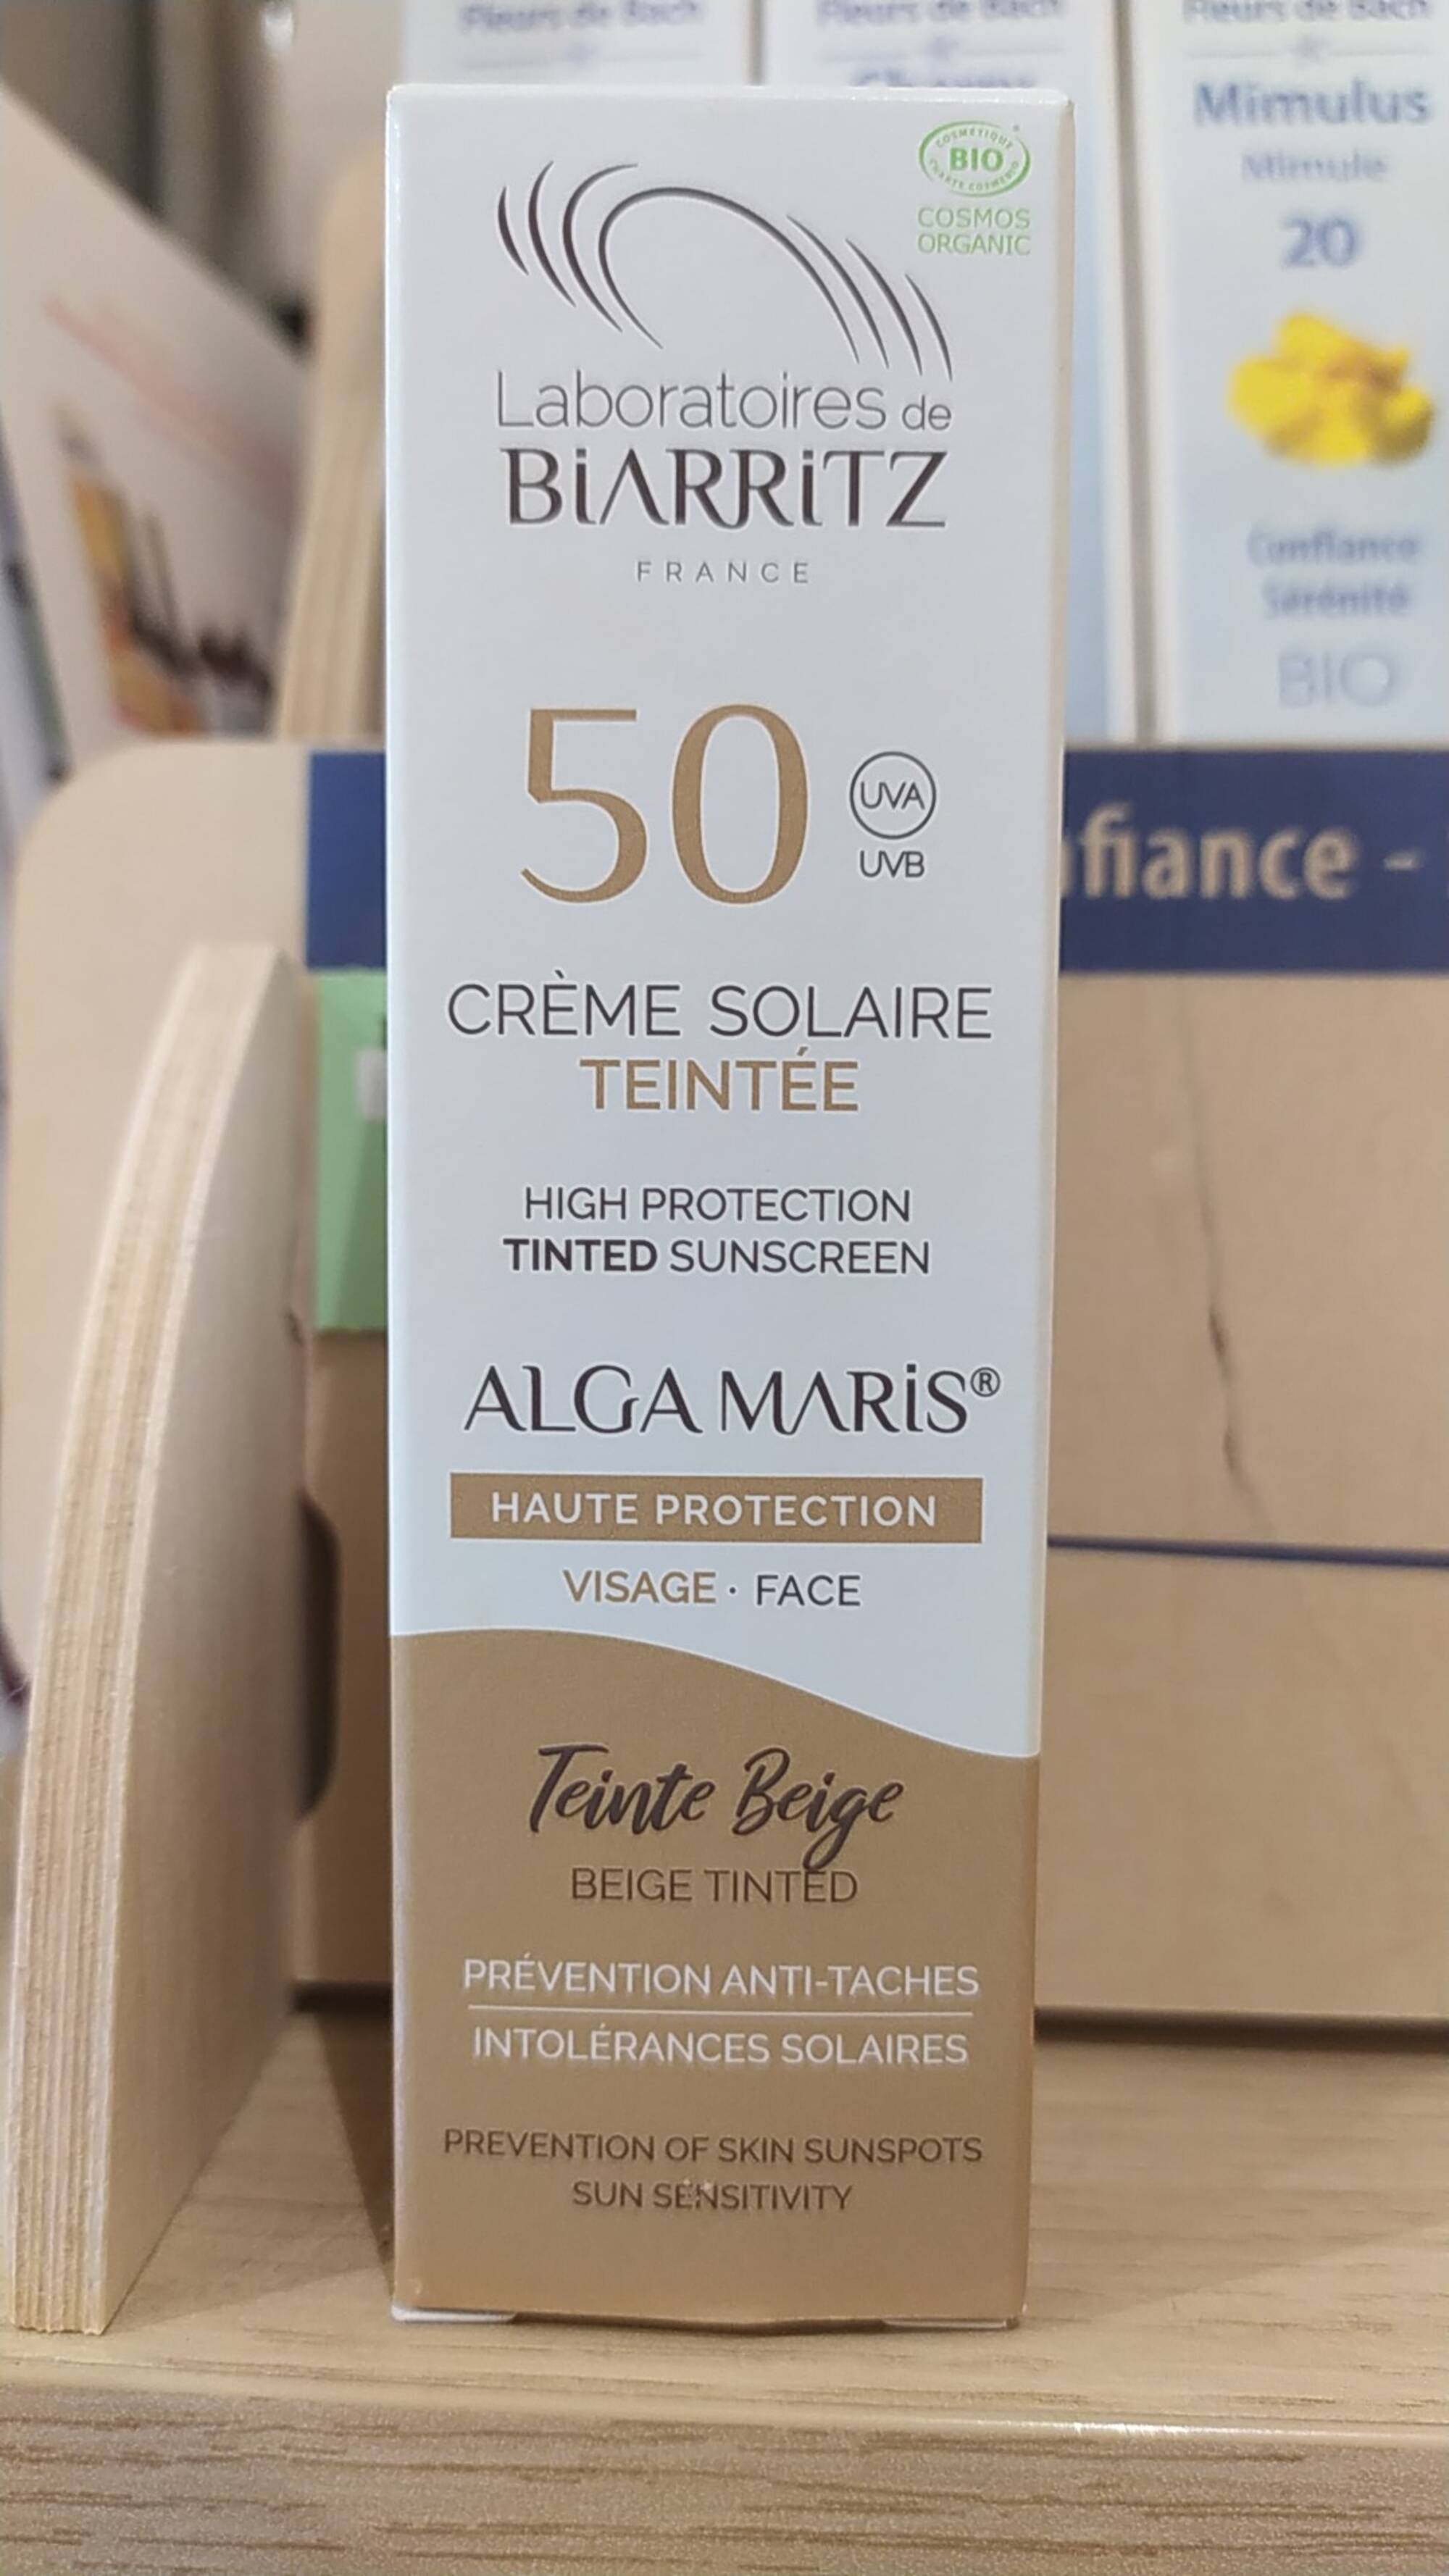 LABORATOIRES DE BIARRITZ - Alga maris - Crème solaire teintée